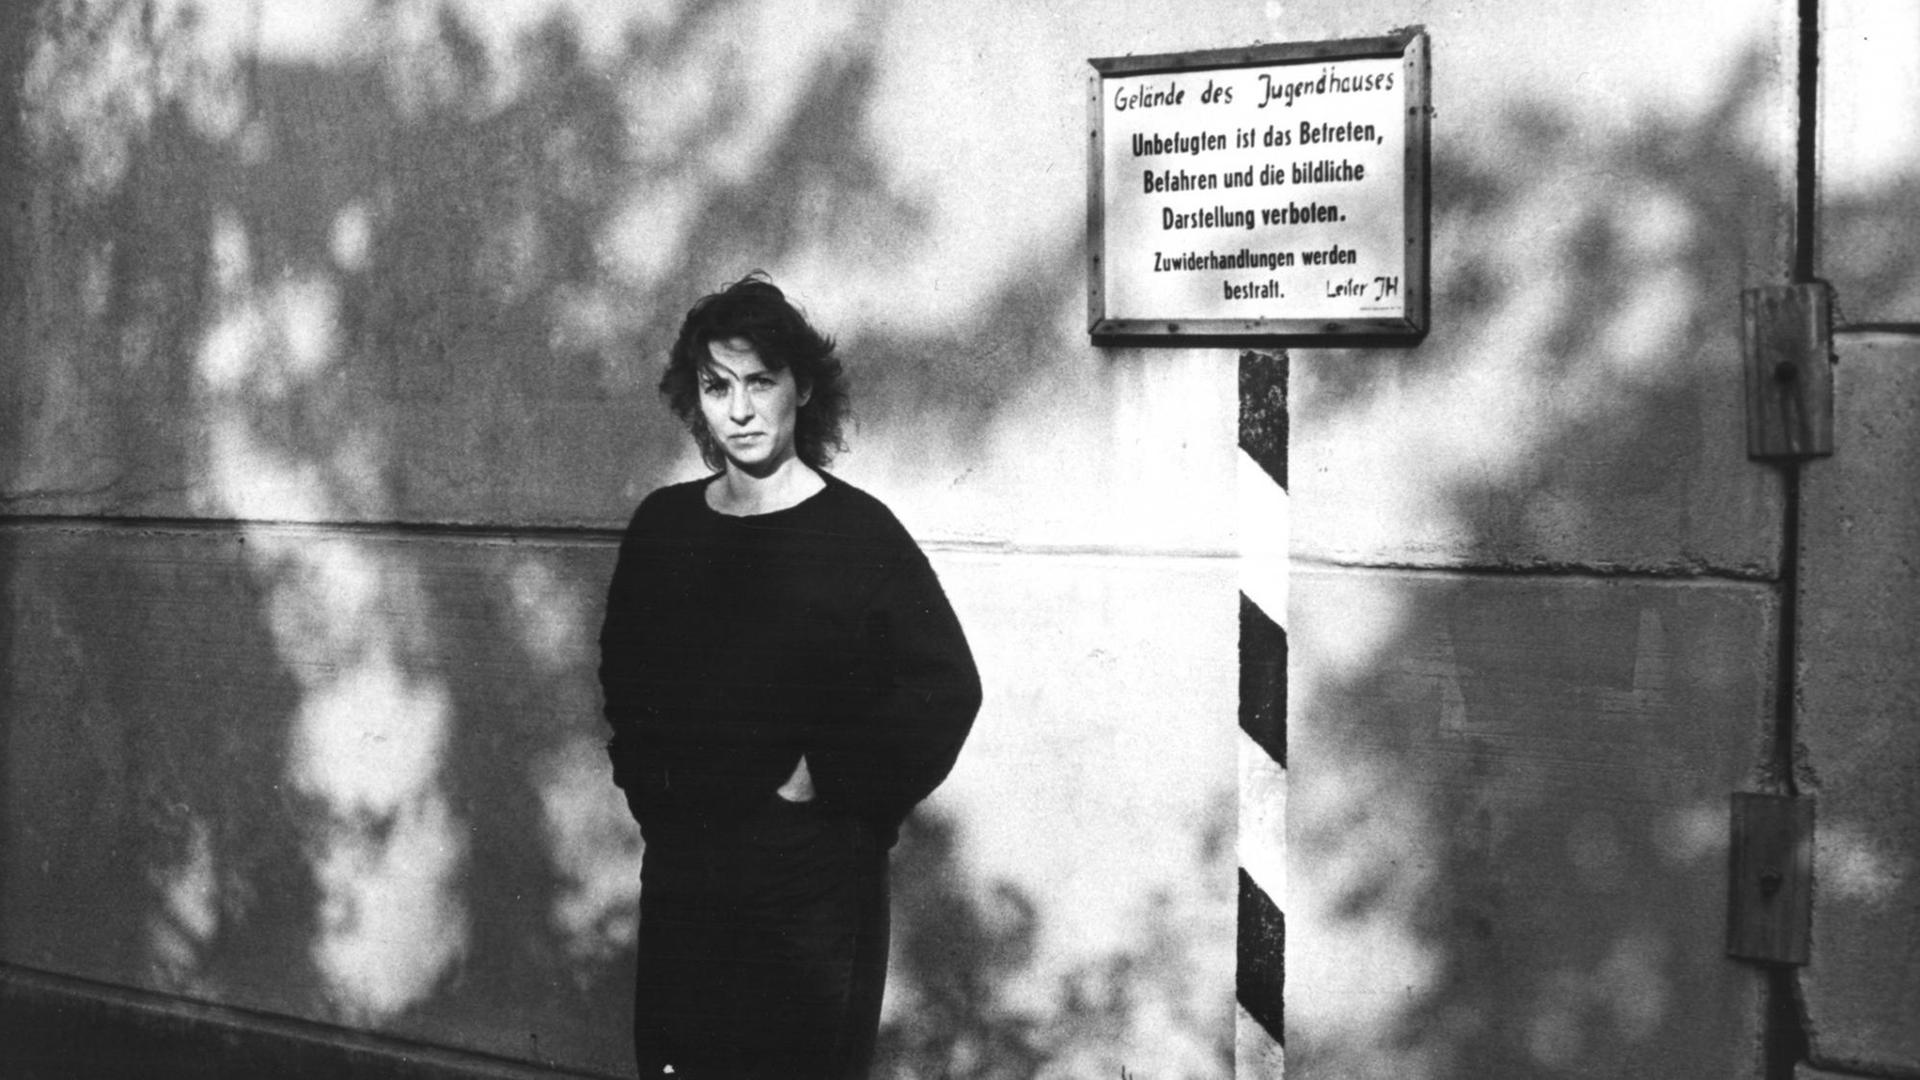 Die Regisseurin Sibylle Schönemann steht in ihrem Film "Verriegelte Zeit" vor einer Außenwand. Auf einem an der Wand angebrachten Schild steht geschrieben: "Geländes des Jugendhauses. Unbefugten ist das Betreten, Befahren und die bildliche Darstellung verboten, Zuwiderhandlungen werden bestraft. Leiter JH."